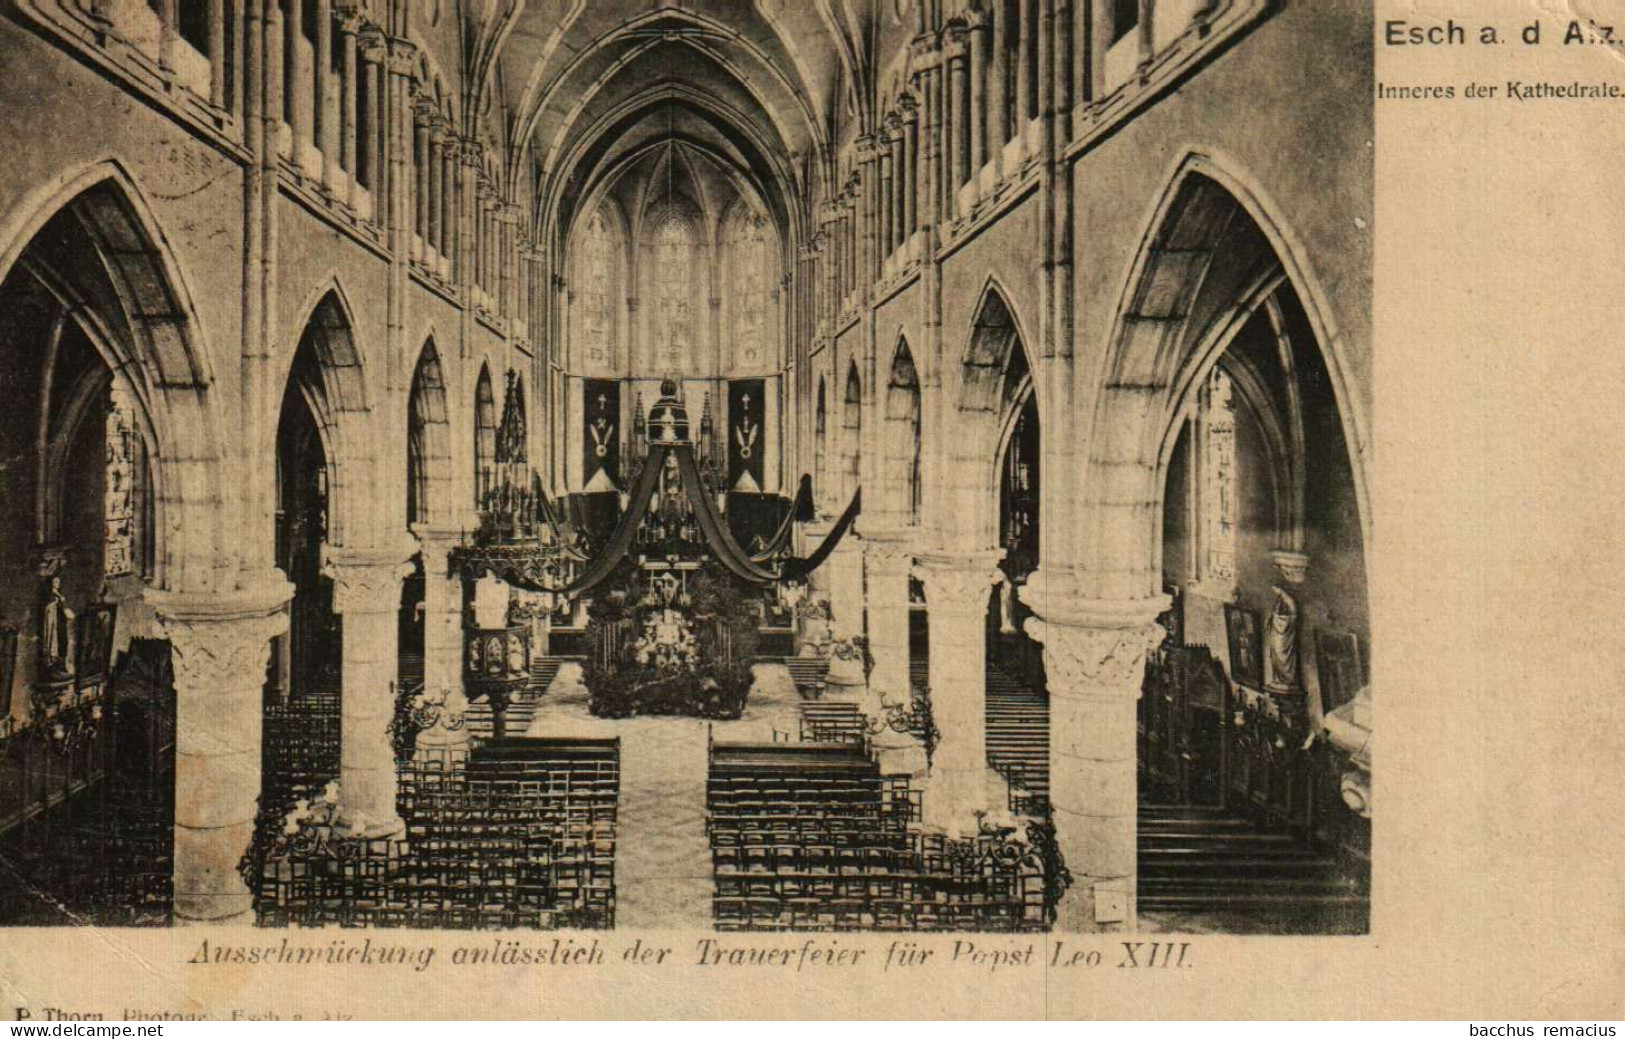 ESCH-SUR-ALZETTE - Inneres Der Kathedrale - Ausschmückung Anlässlich Der Trauerfeier Für Papst Leo XIII. - Esch-Alzette